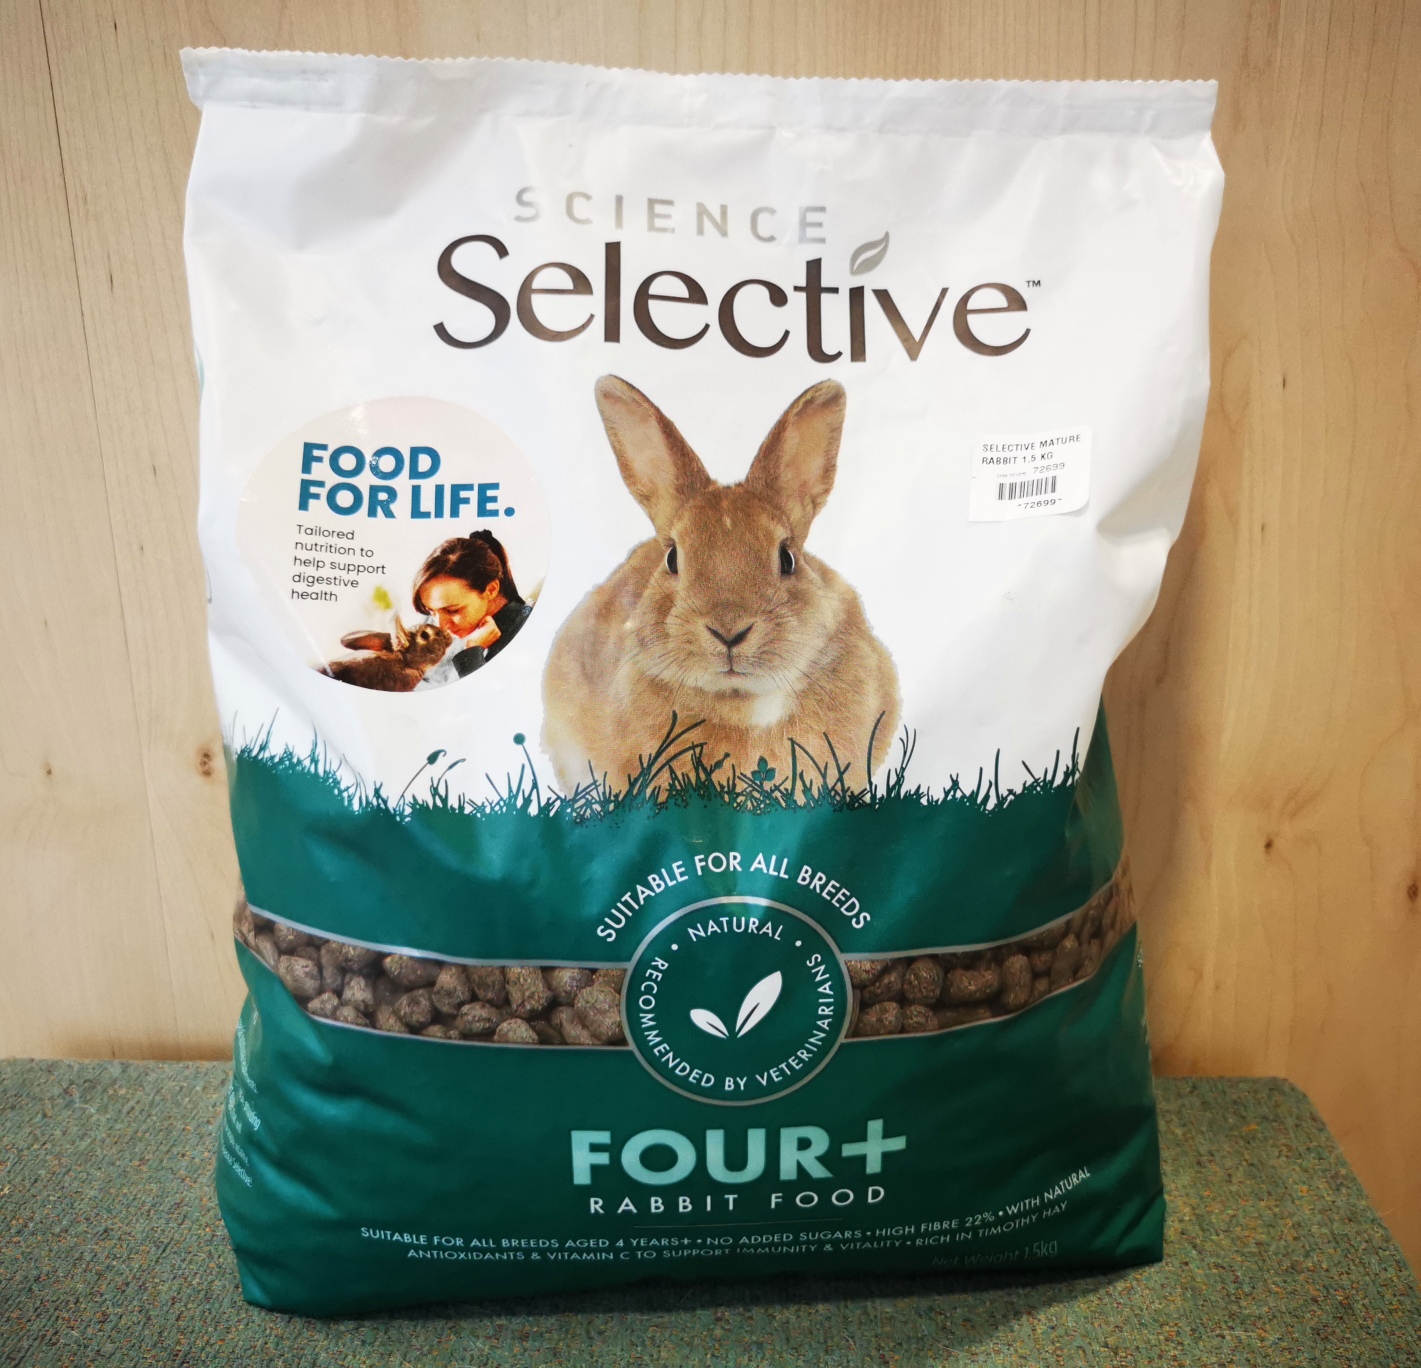 Alimentation du lapin - Comment nourrir votre lapin ?